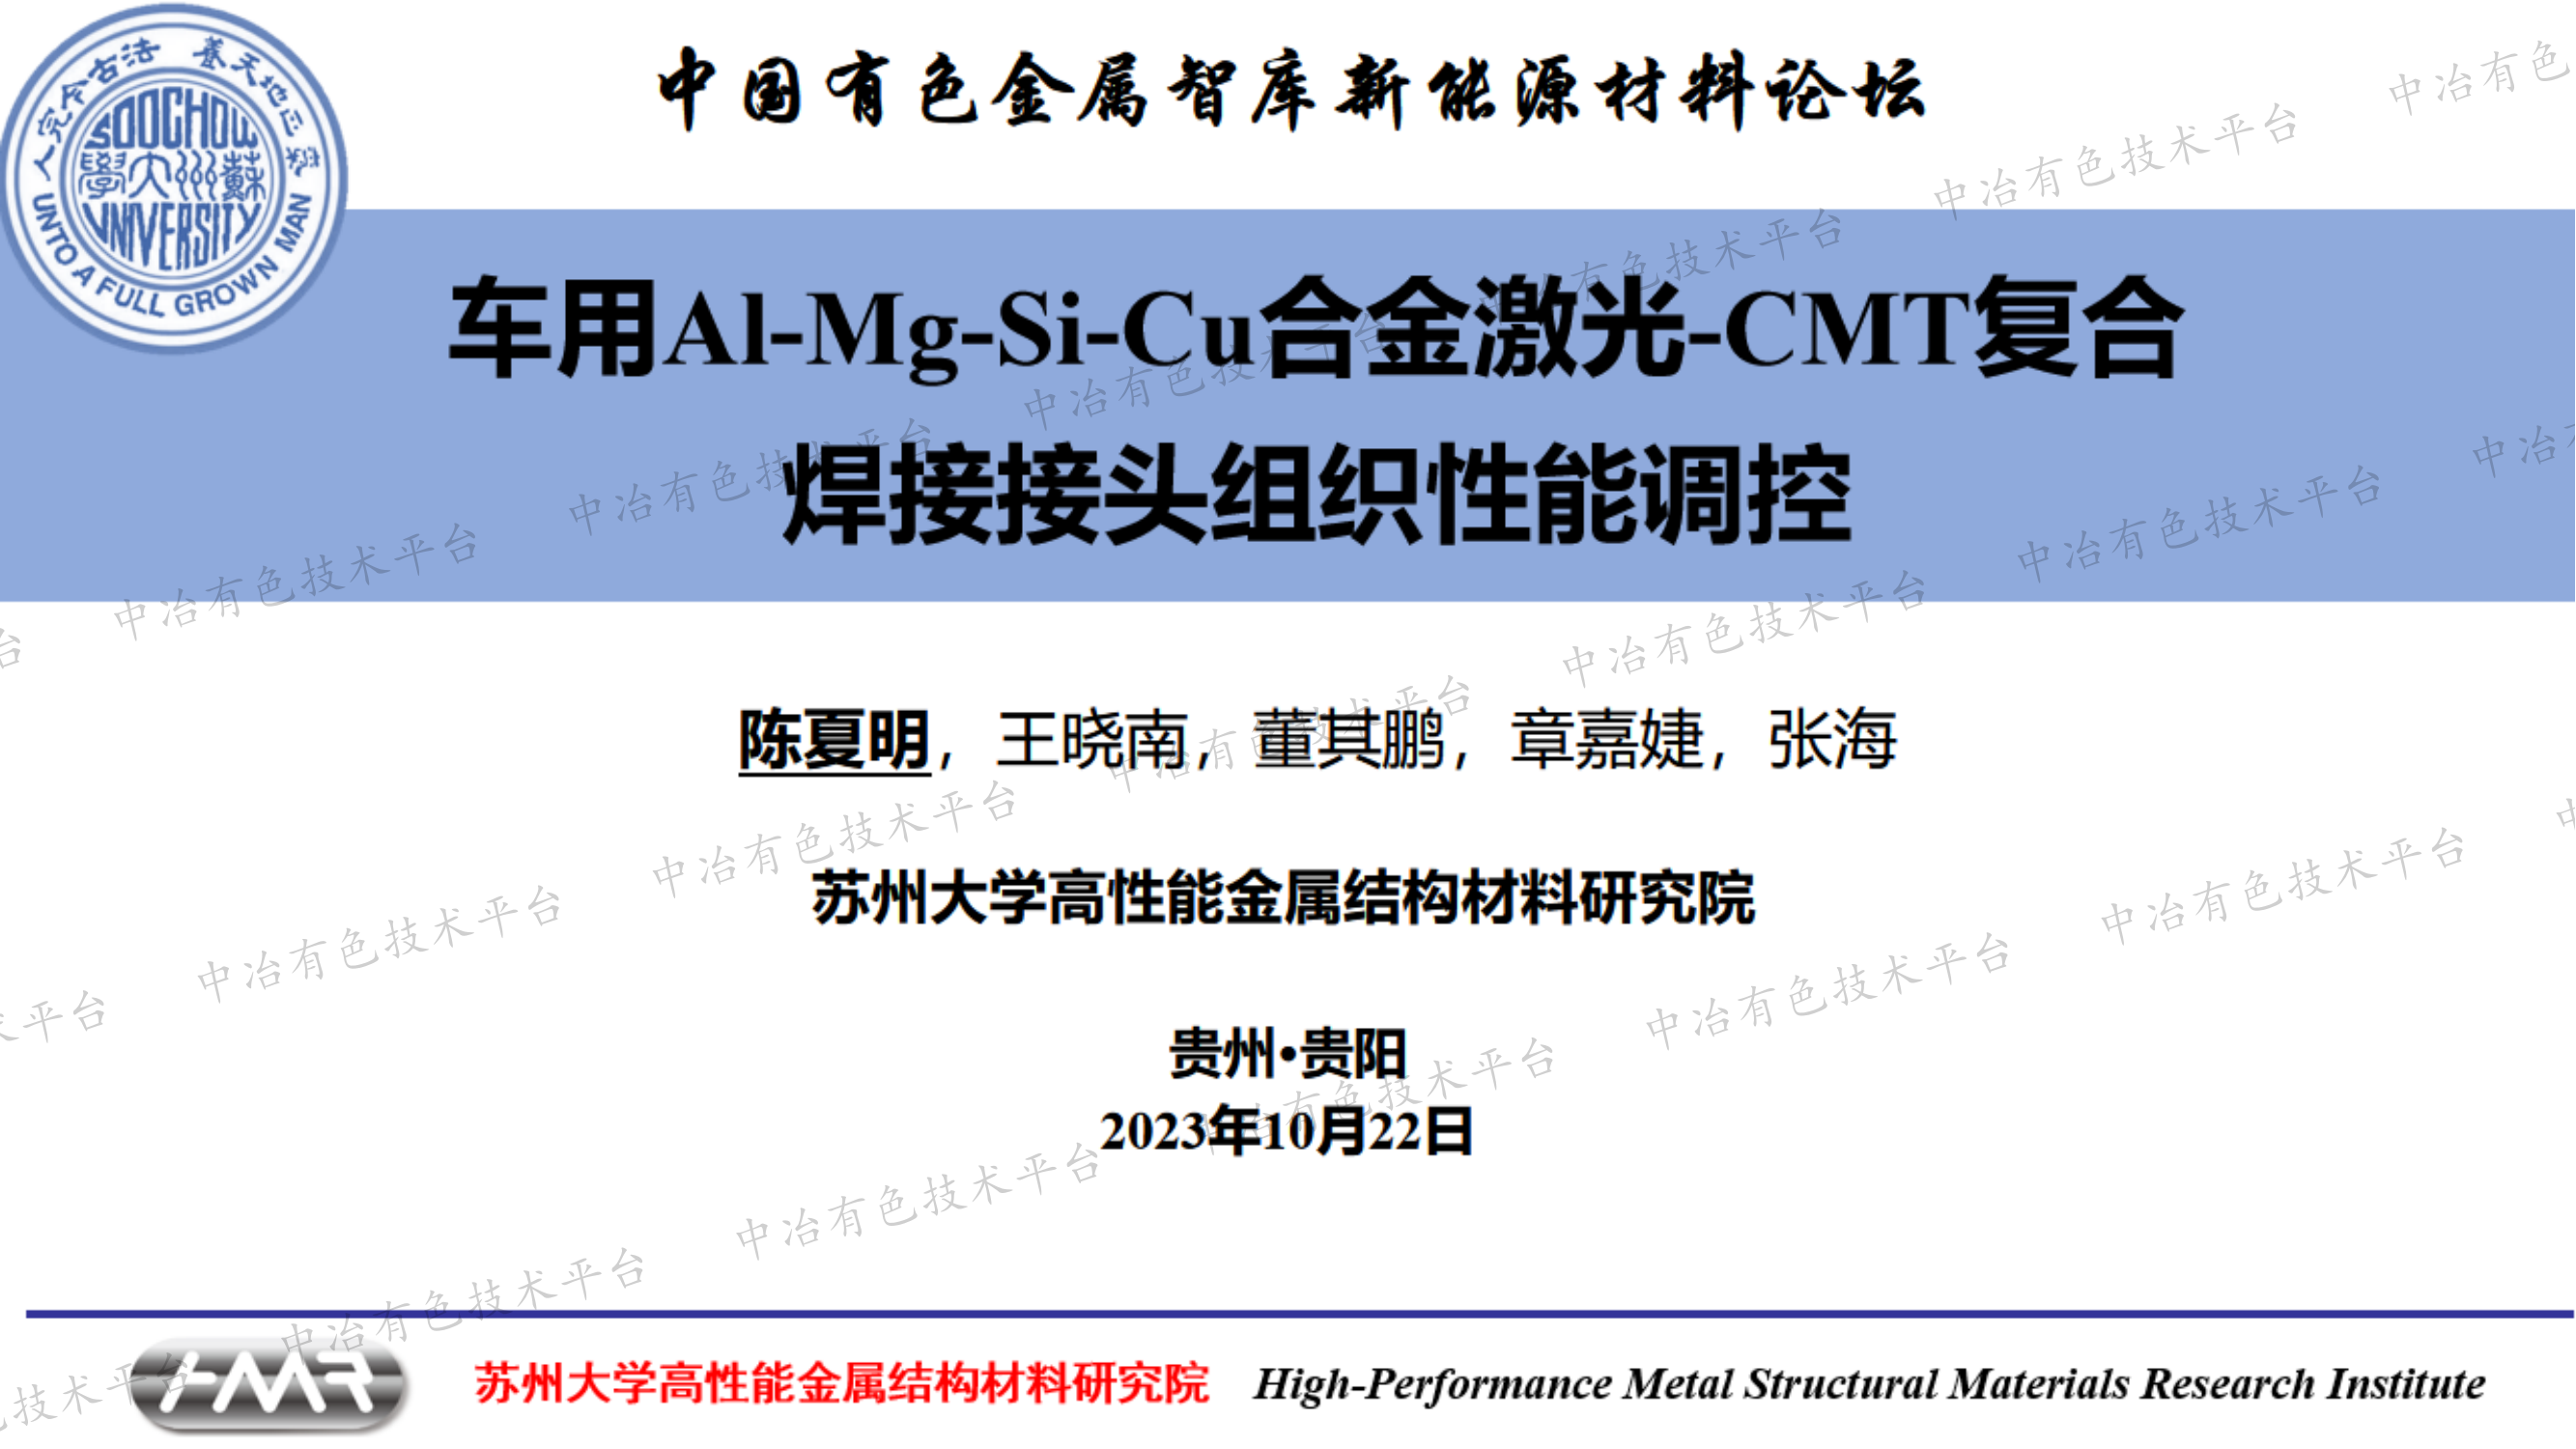 车用Al-Mg-Si-Cu合金激光-CMT复合焊接接头组织性能调控